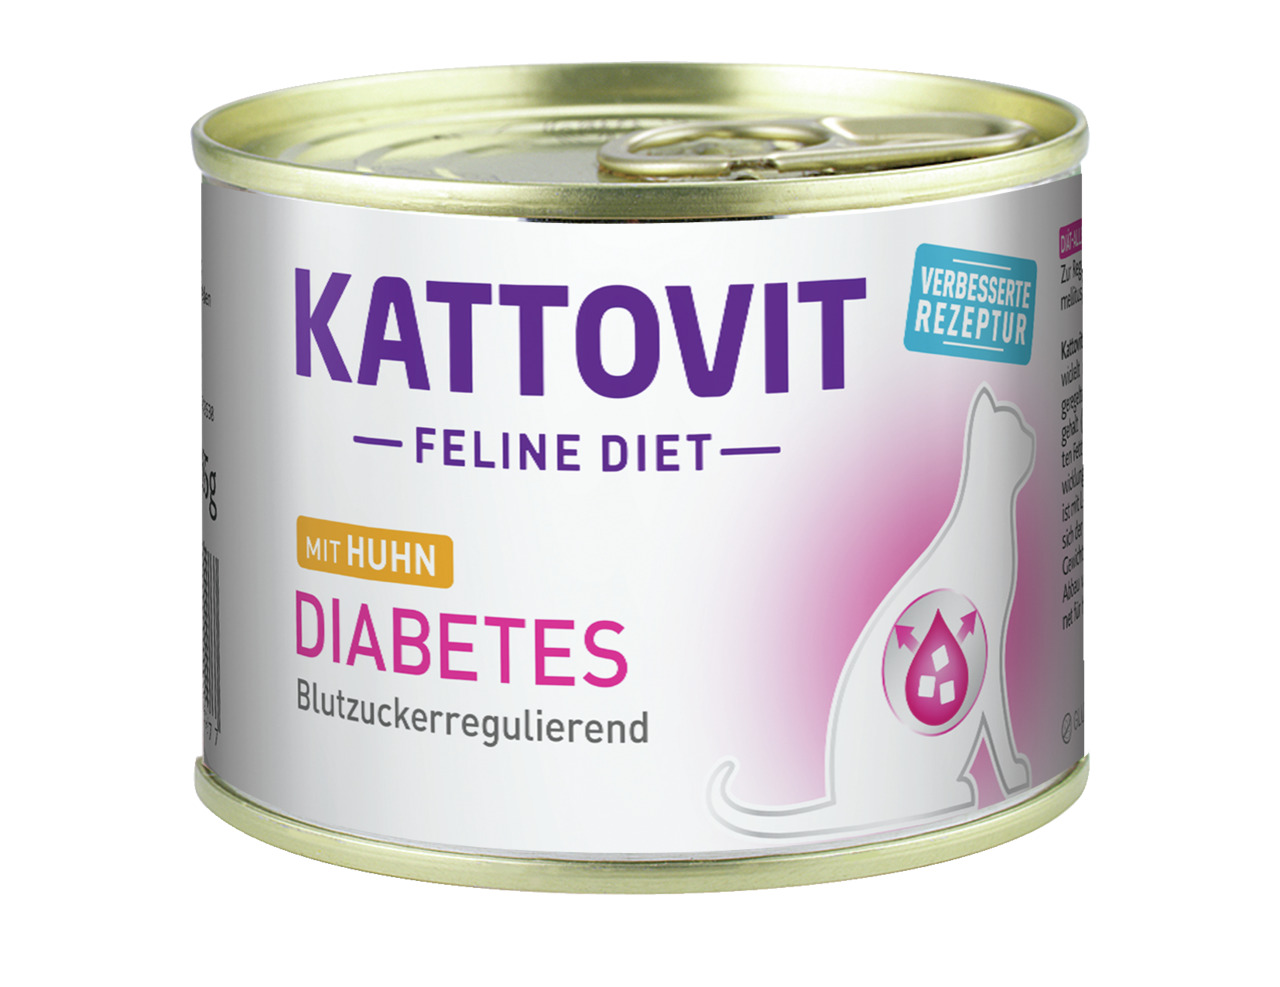 Sparpaket 24 x 185 g Kattovit Feline Diet Diabetes mit Huhn Katzen Nassfutter